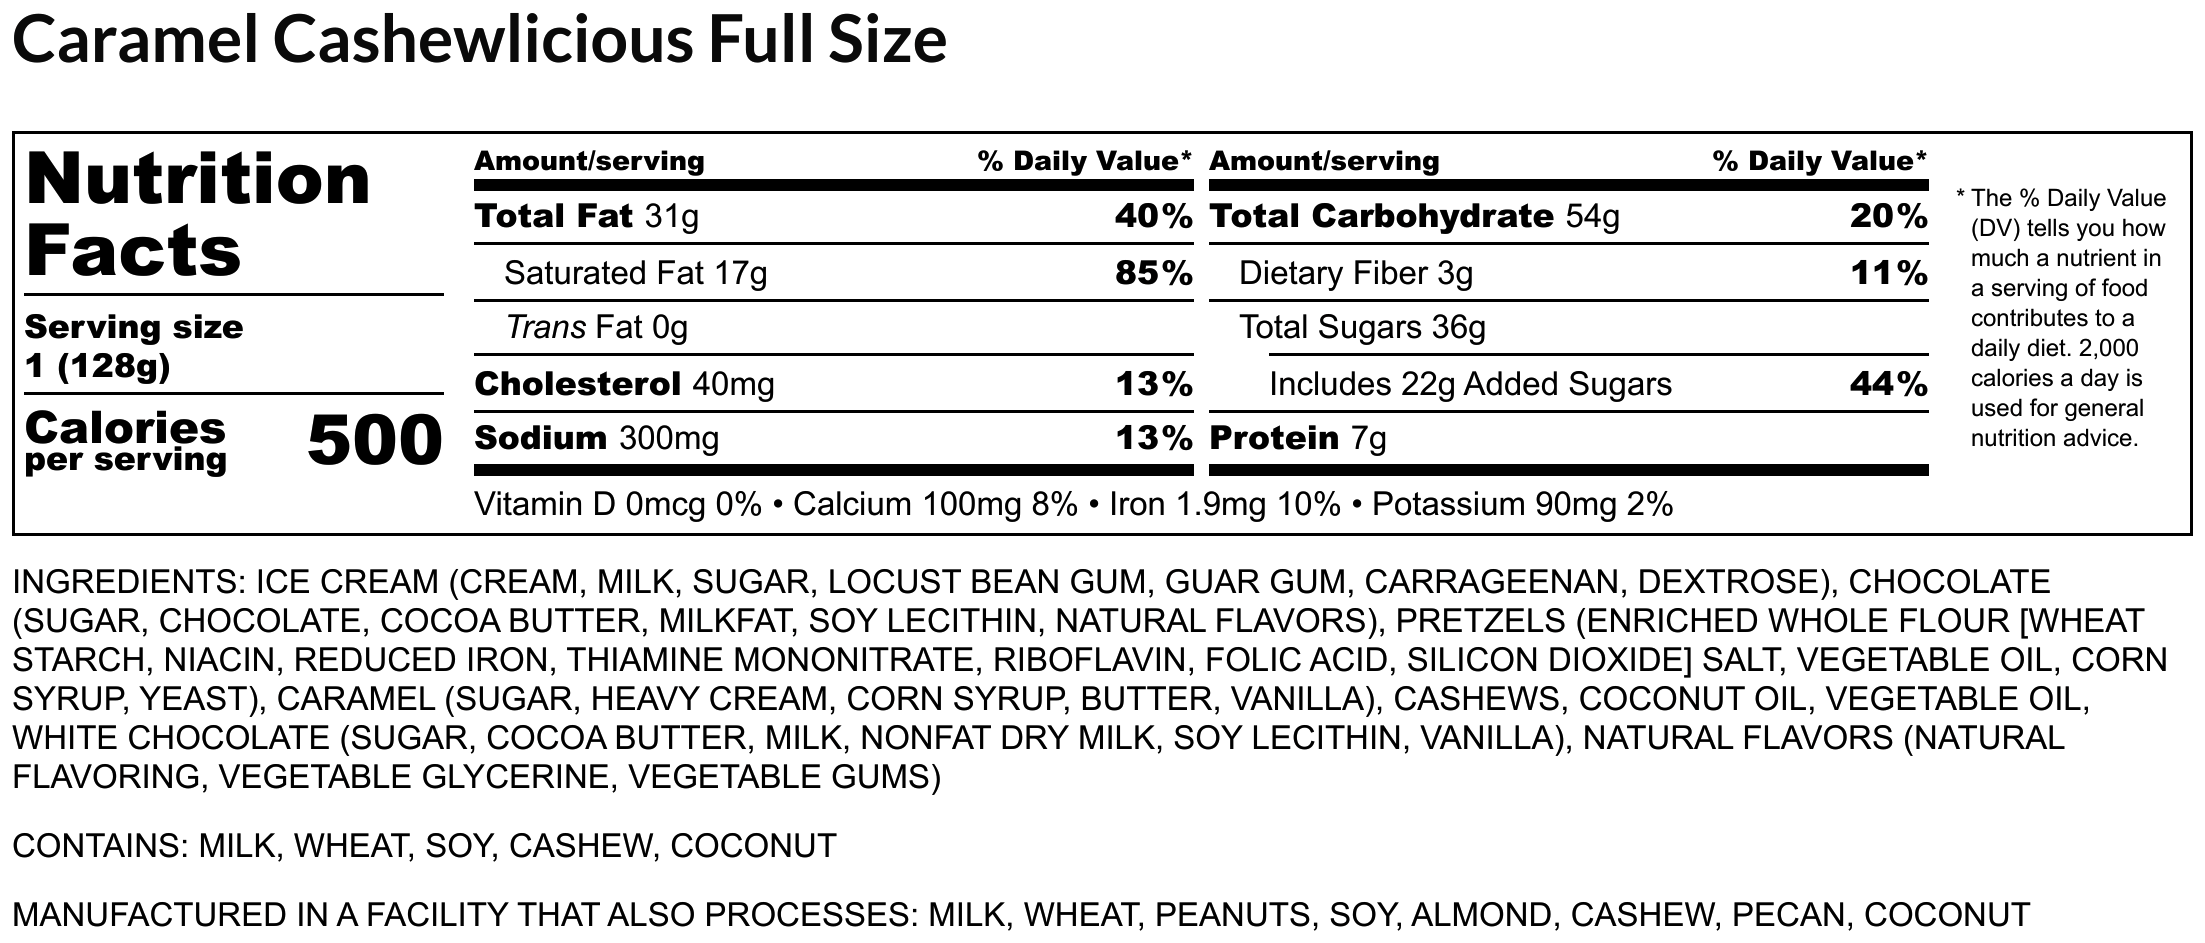 Caramel Cashewlicious Full Size